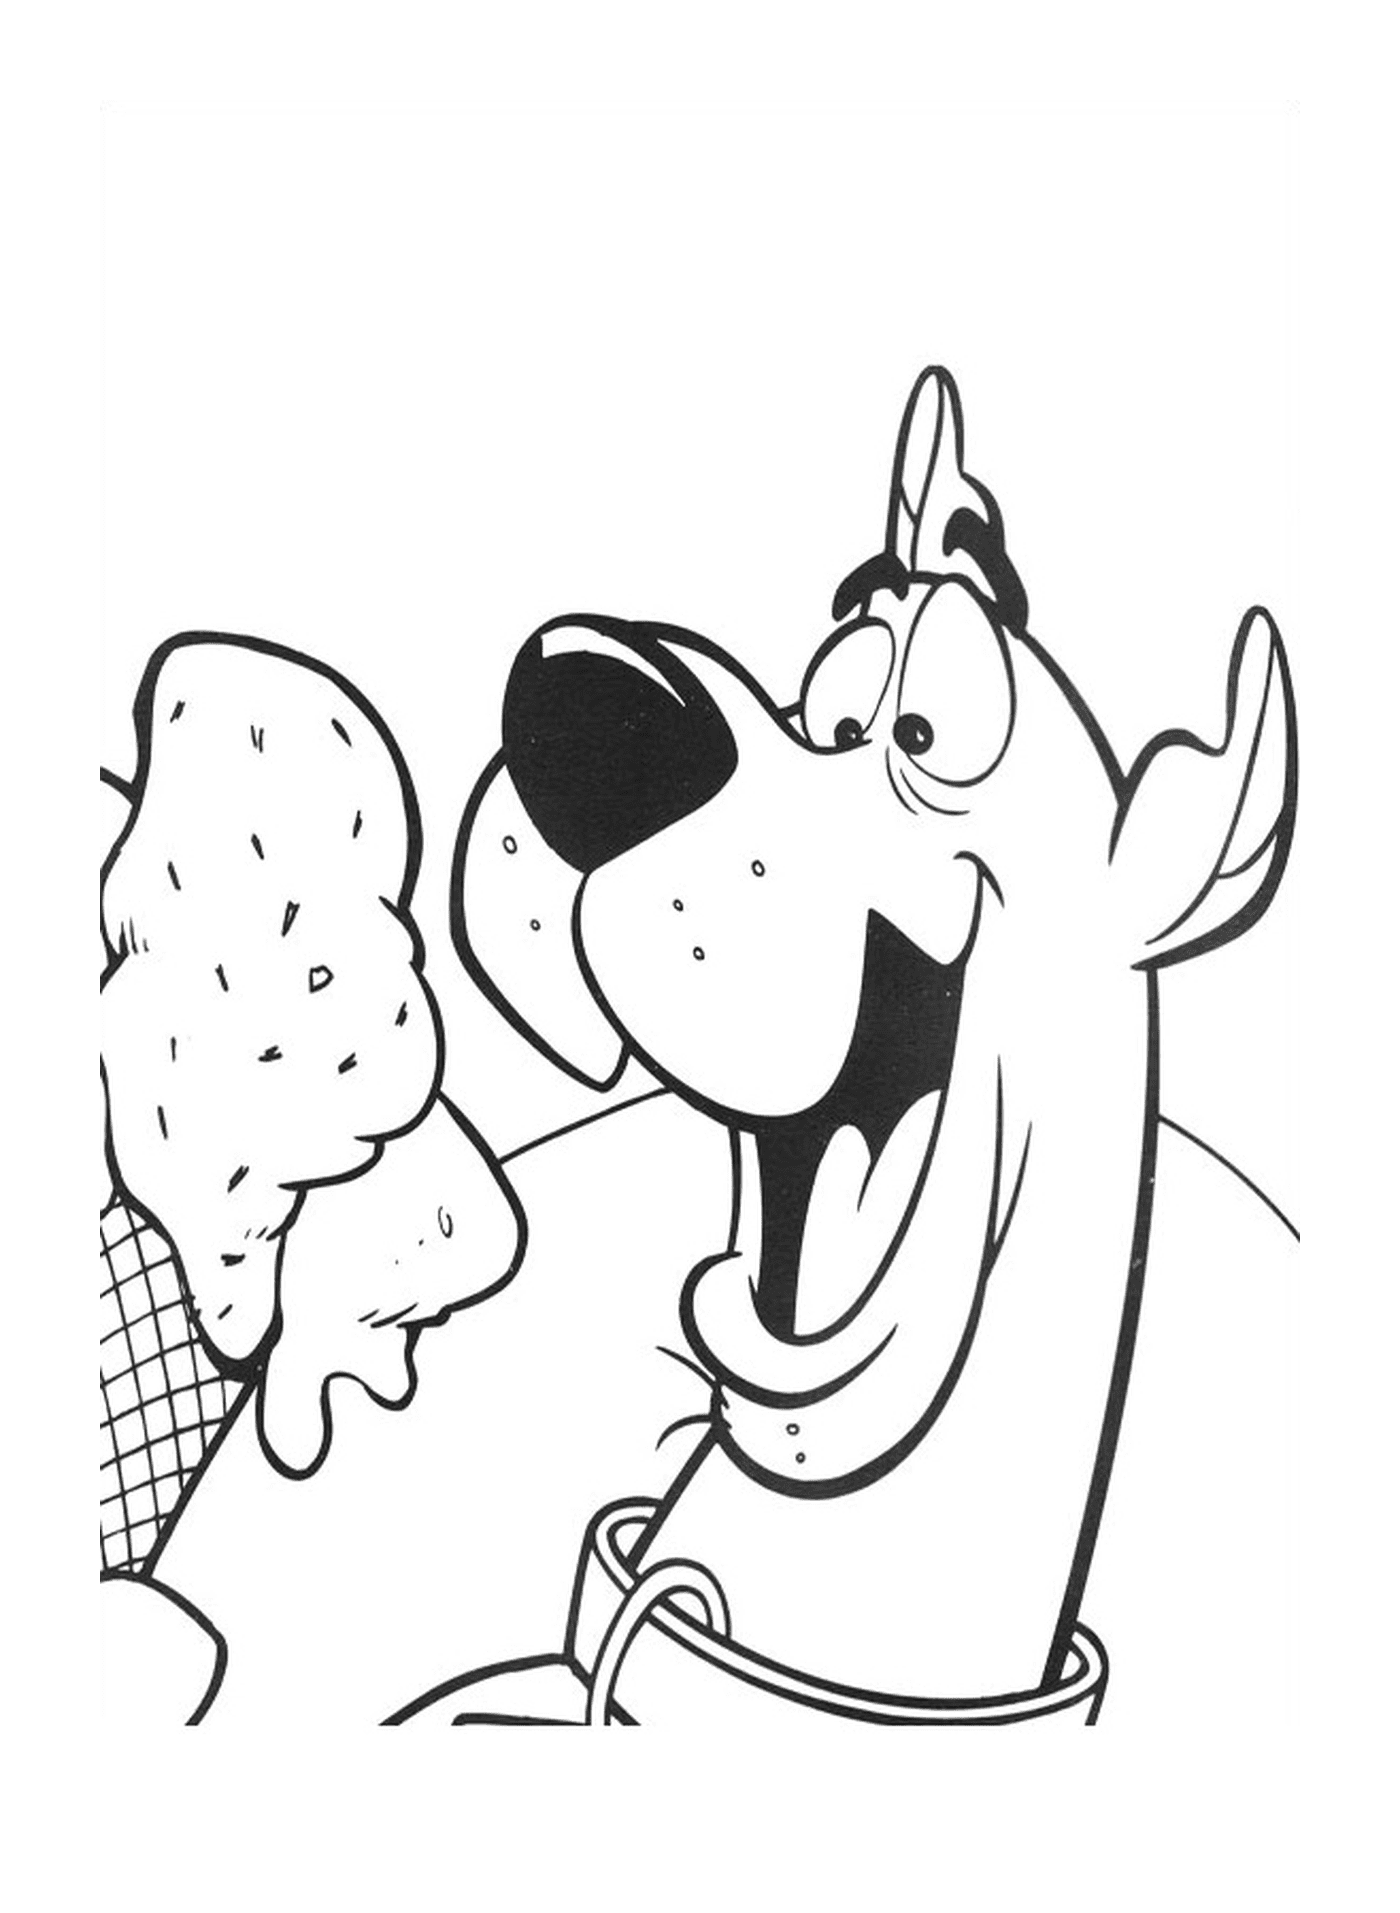  Um cão come sorvete 